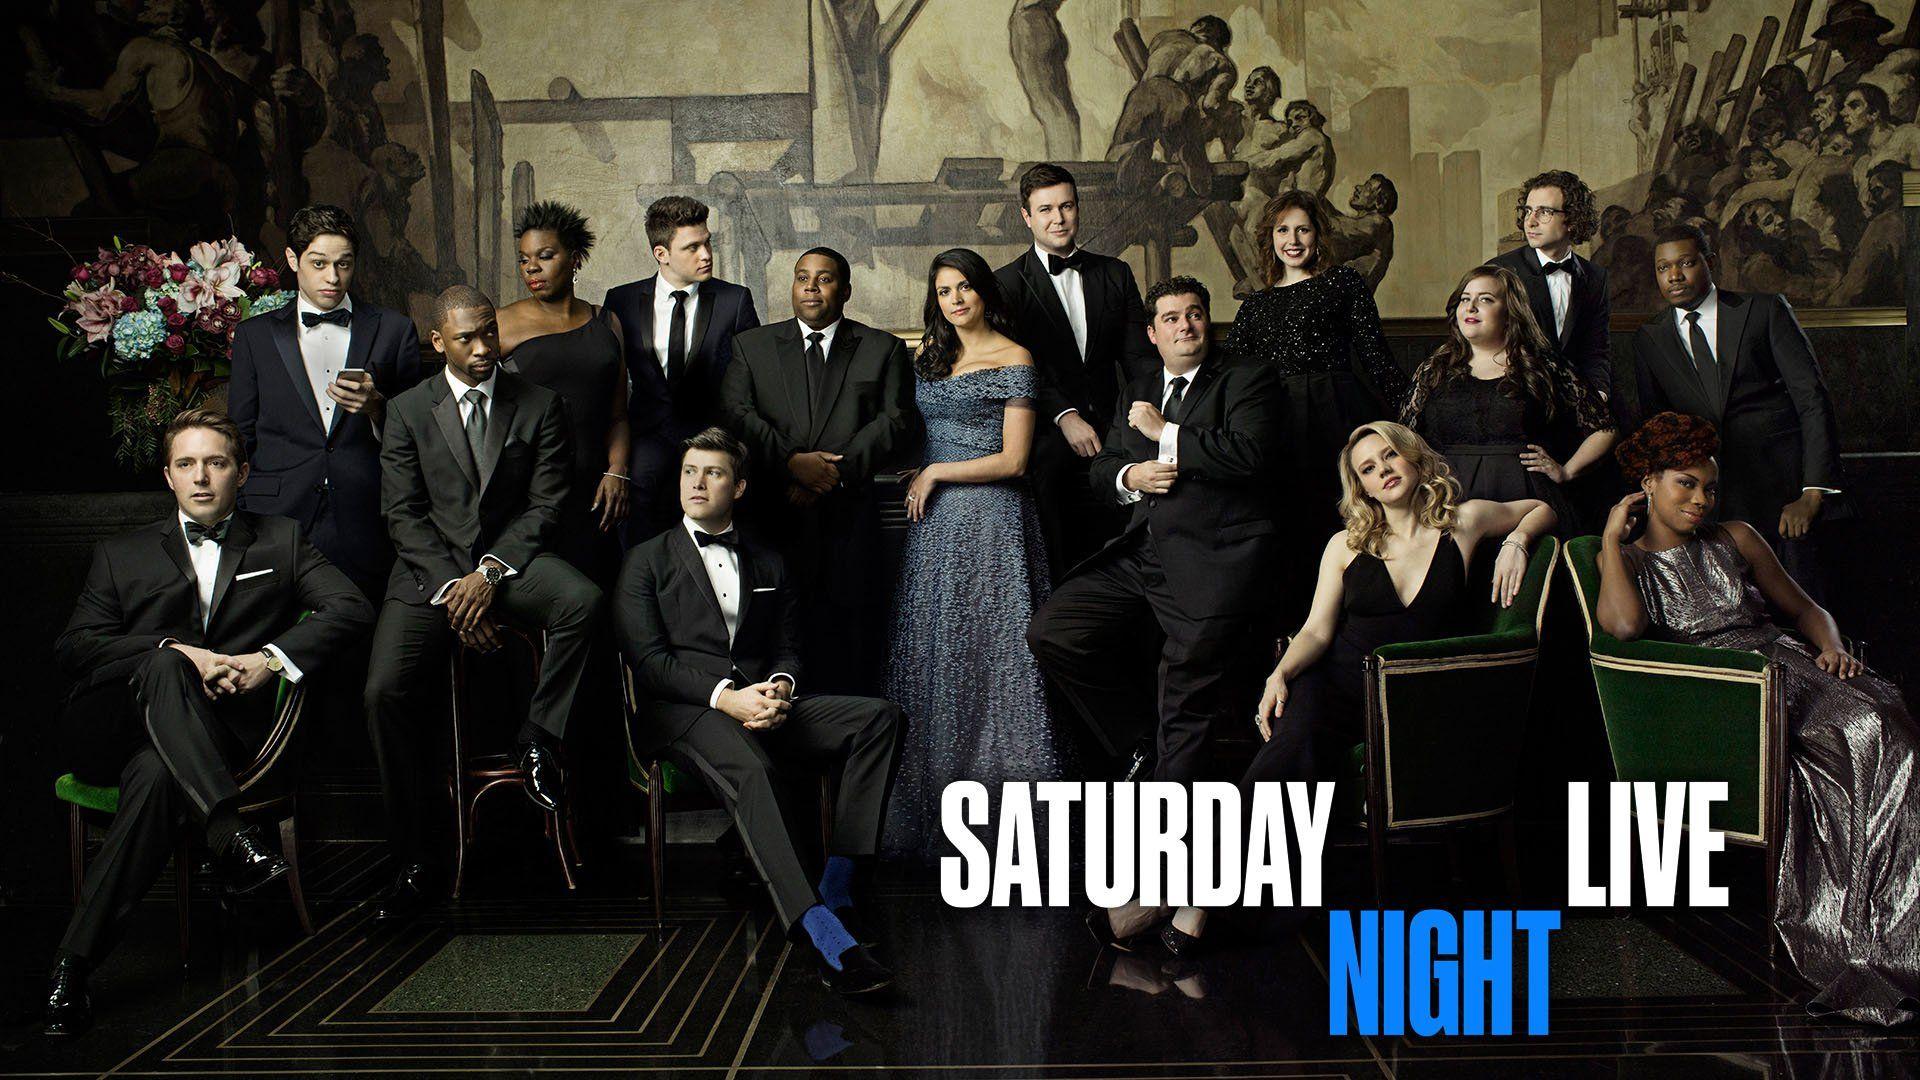 Субботним вечером в прямом. Saturday Night Live заставка. «Субботним вечером в прямом эфире» Saturday Night Live (1975-…), NBC. Live Night.